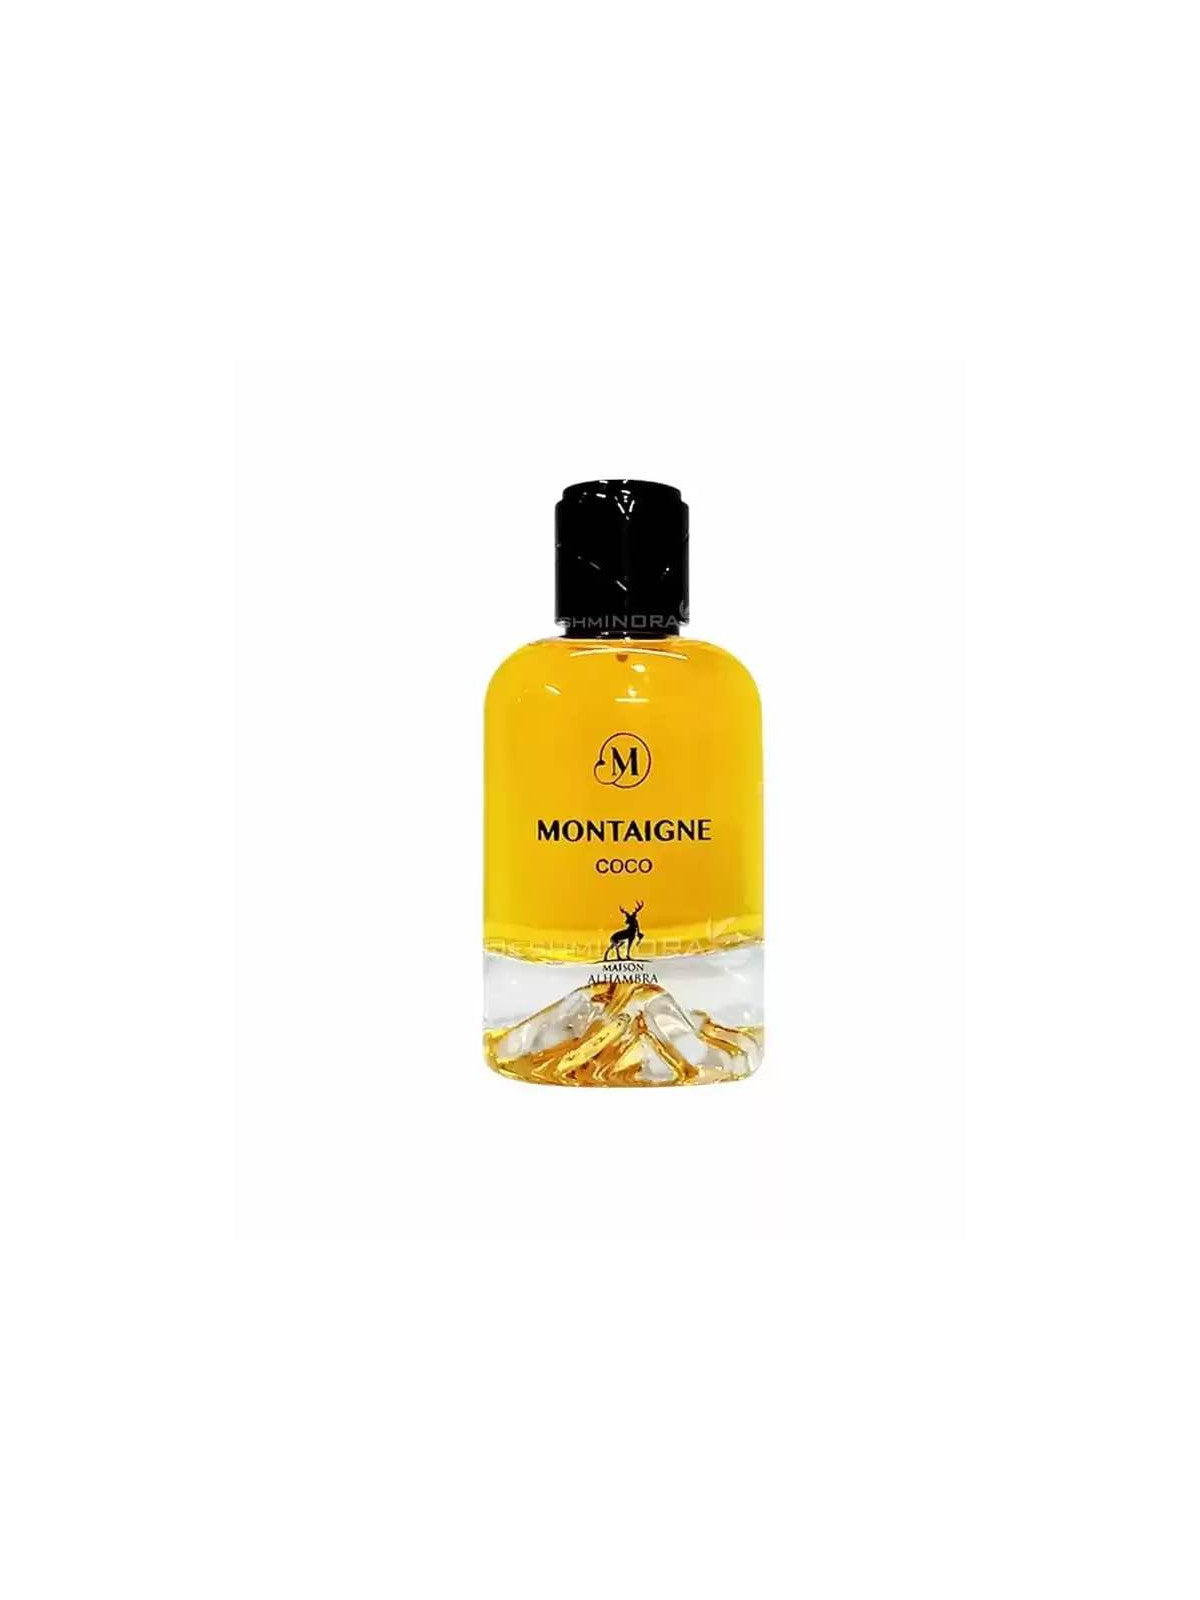 Montaigne Coco by Masion Alhambra for Women - Eau De Parfum - 100ML